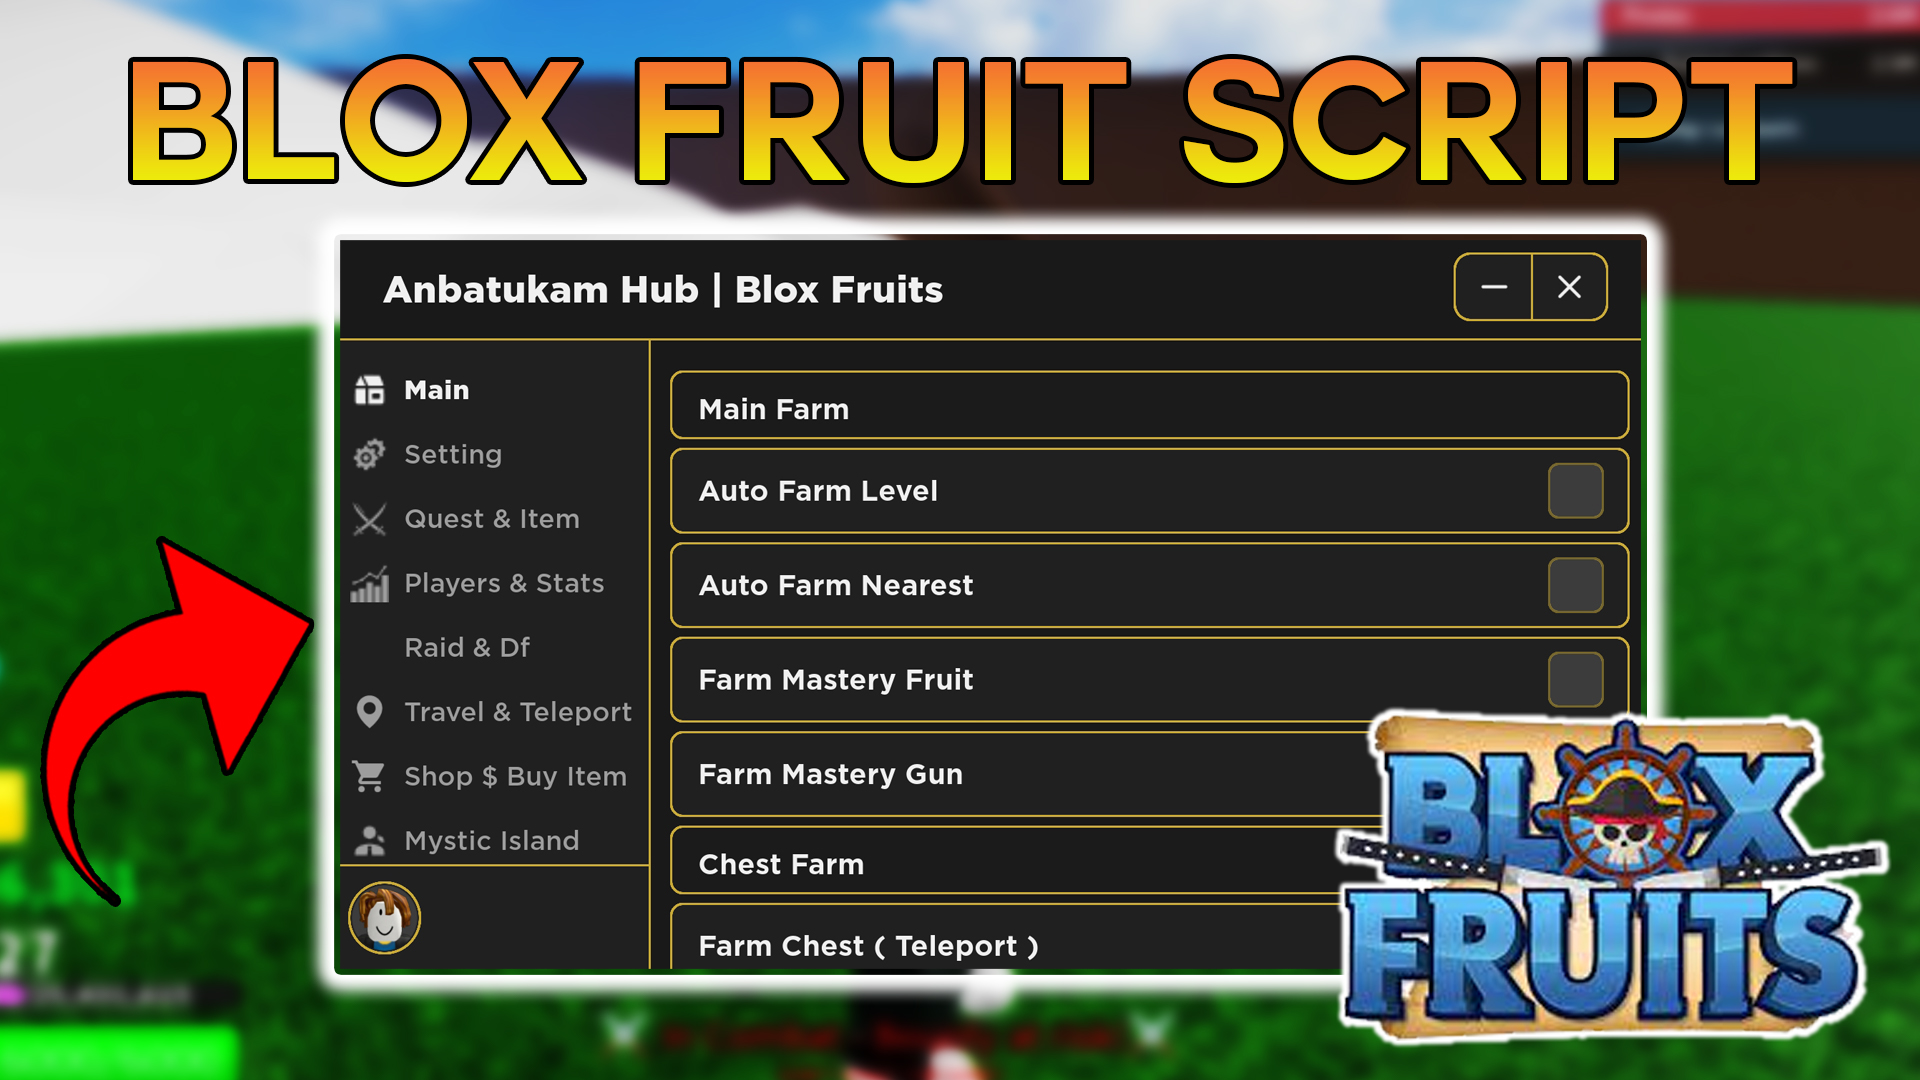 Anbatukam Hub Blox Fruits Mobile Script Download 100% Free